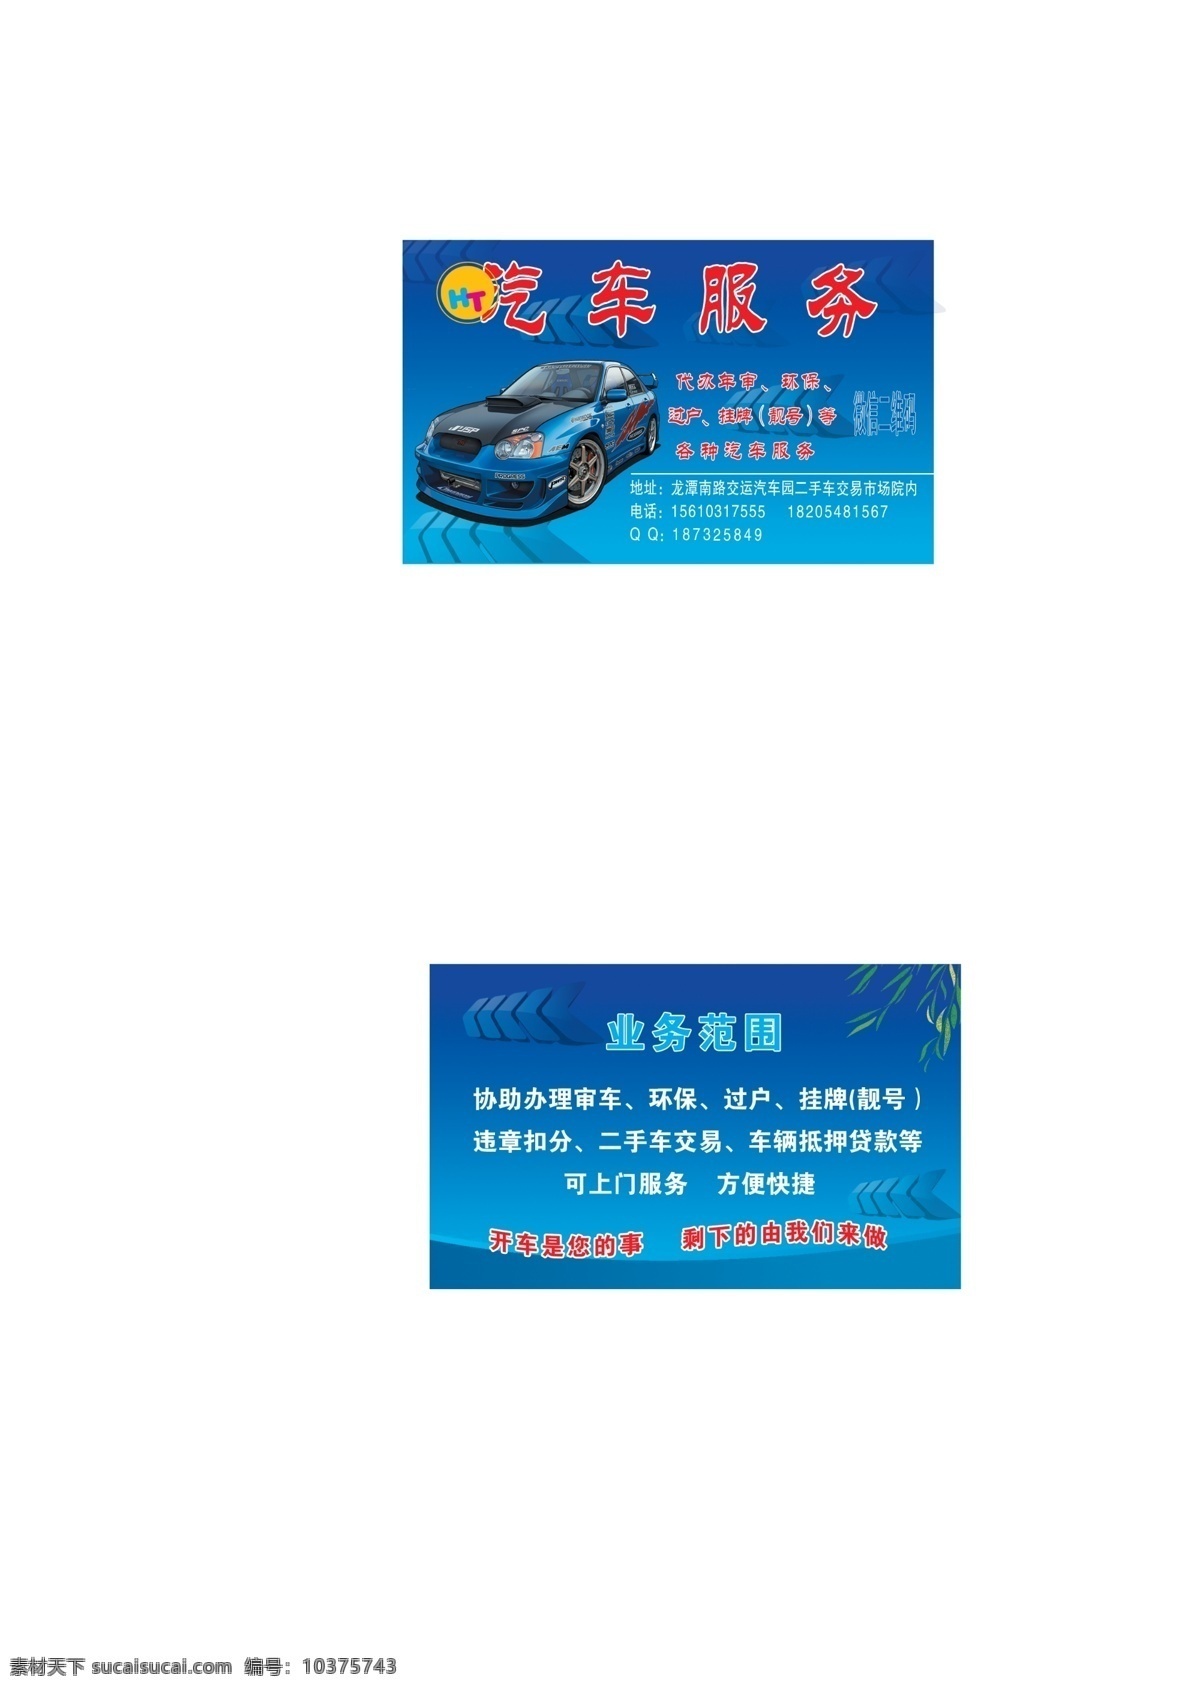 汽车服务名片 汽车服务 车 车素材 蓝色背景图 显眼的背景图 名片卡片